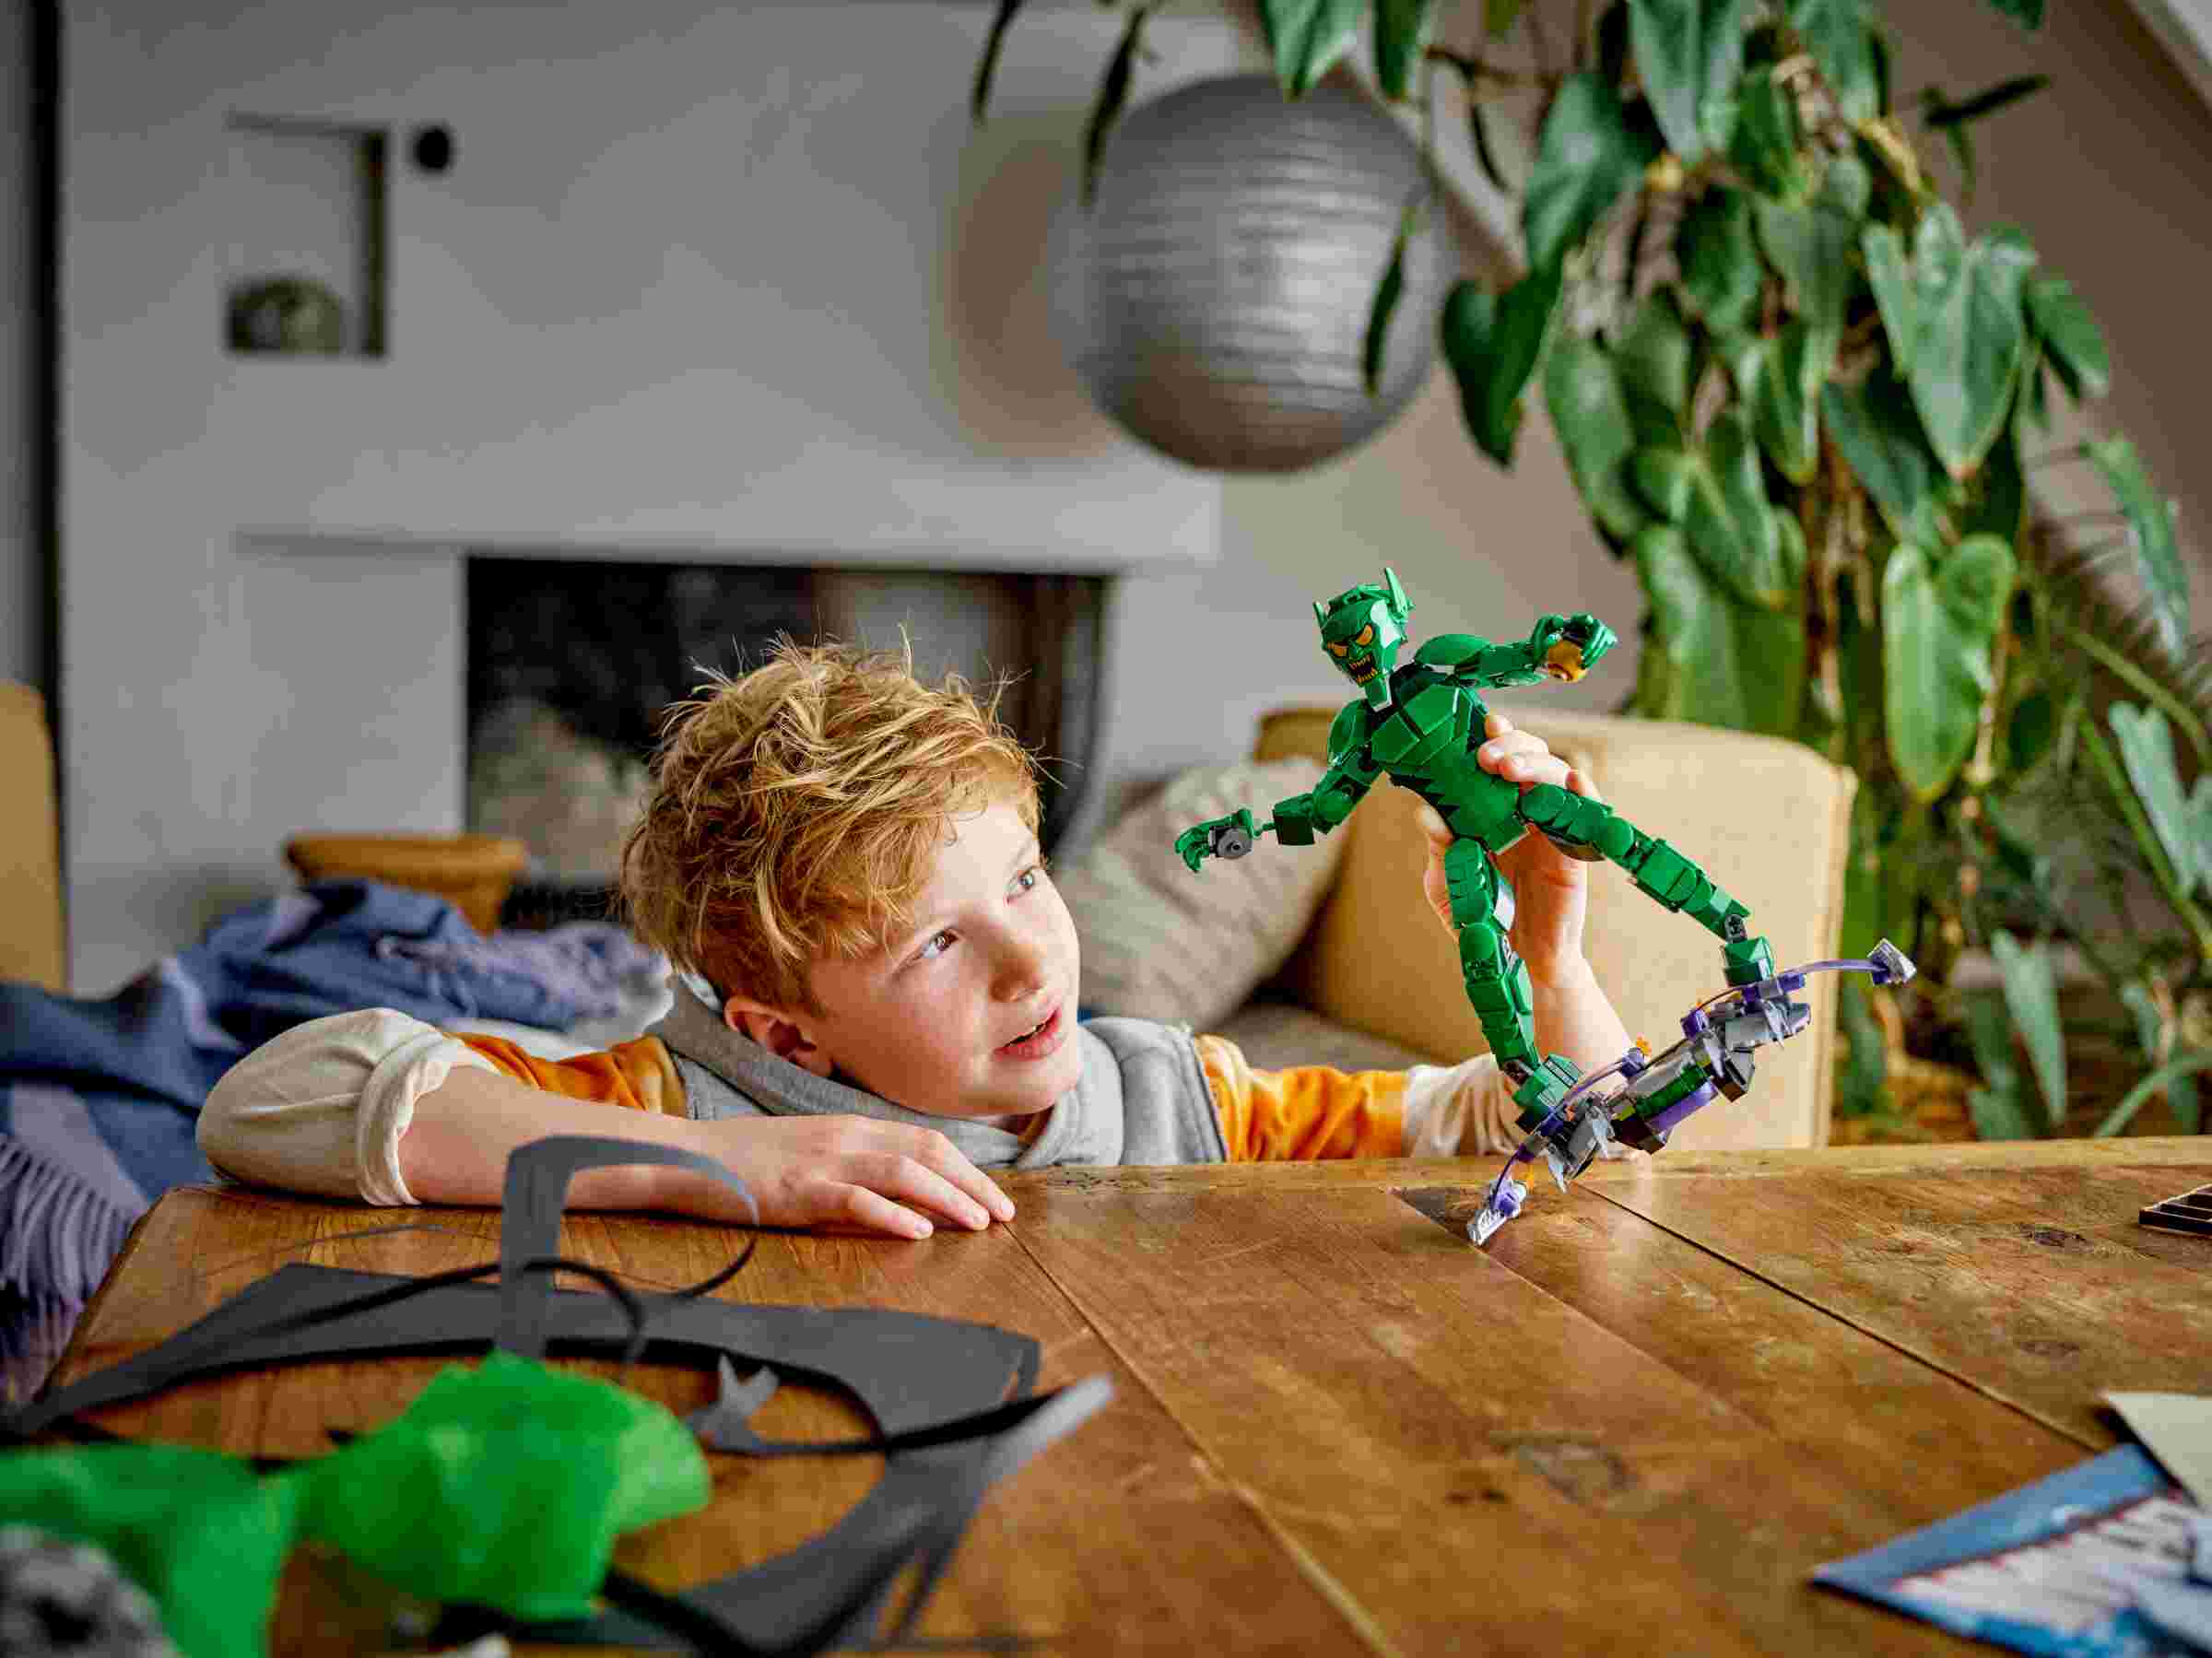 LEGO 76284 Marvel Green Goblin Baufigur, bewegliche Gelenke, Gleiter